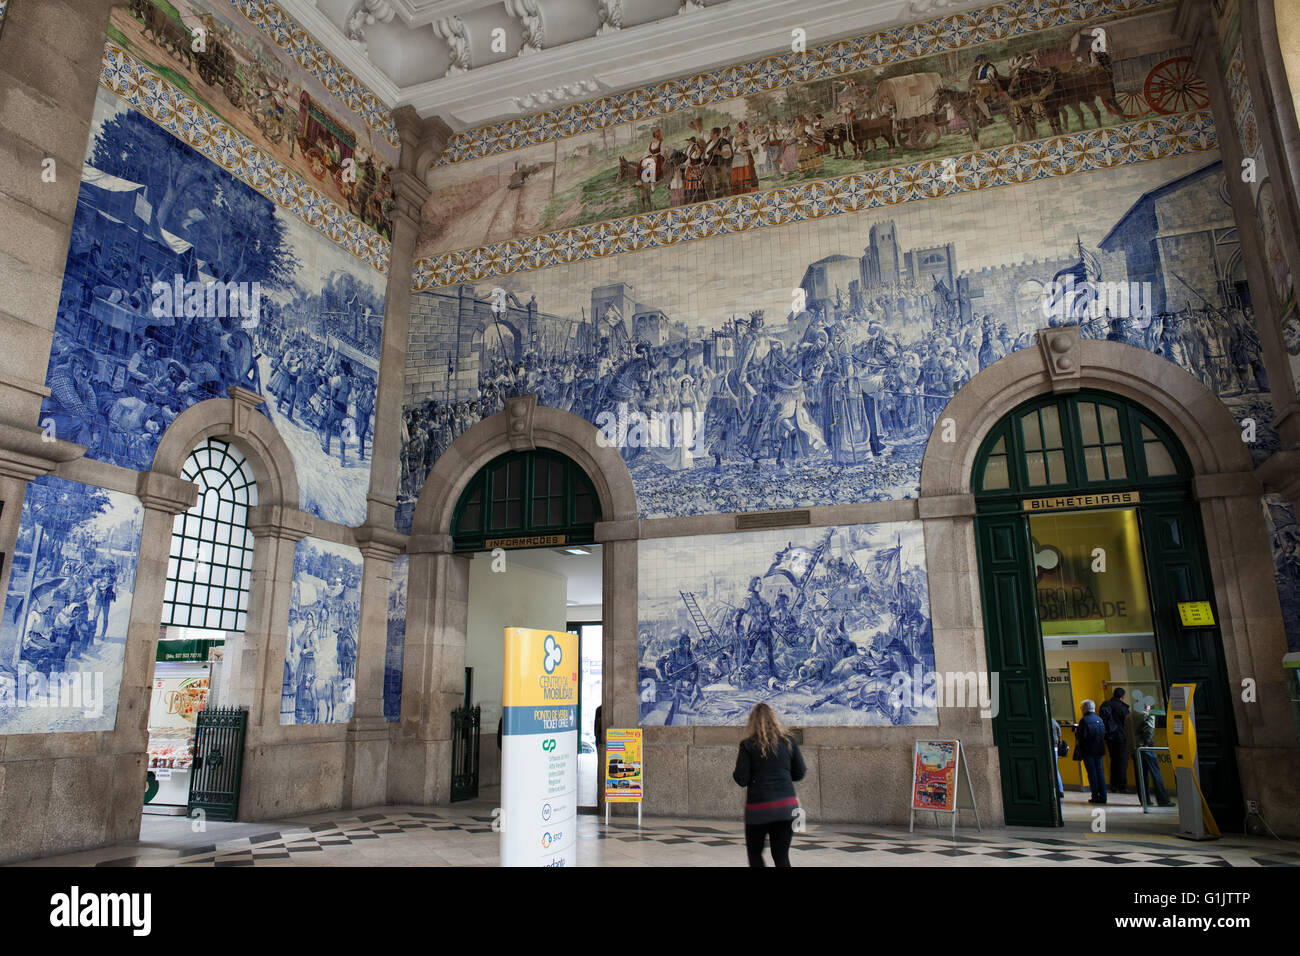 Portugal, Porto, la gare de São Bento à l'intérieur des panneaux tuiles azulejo, monument historique de la ville Banque D'Images